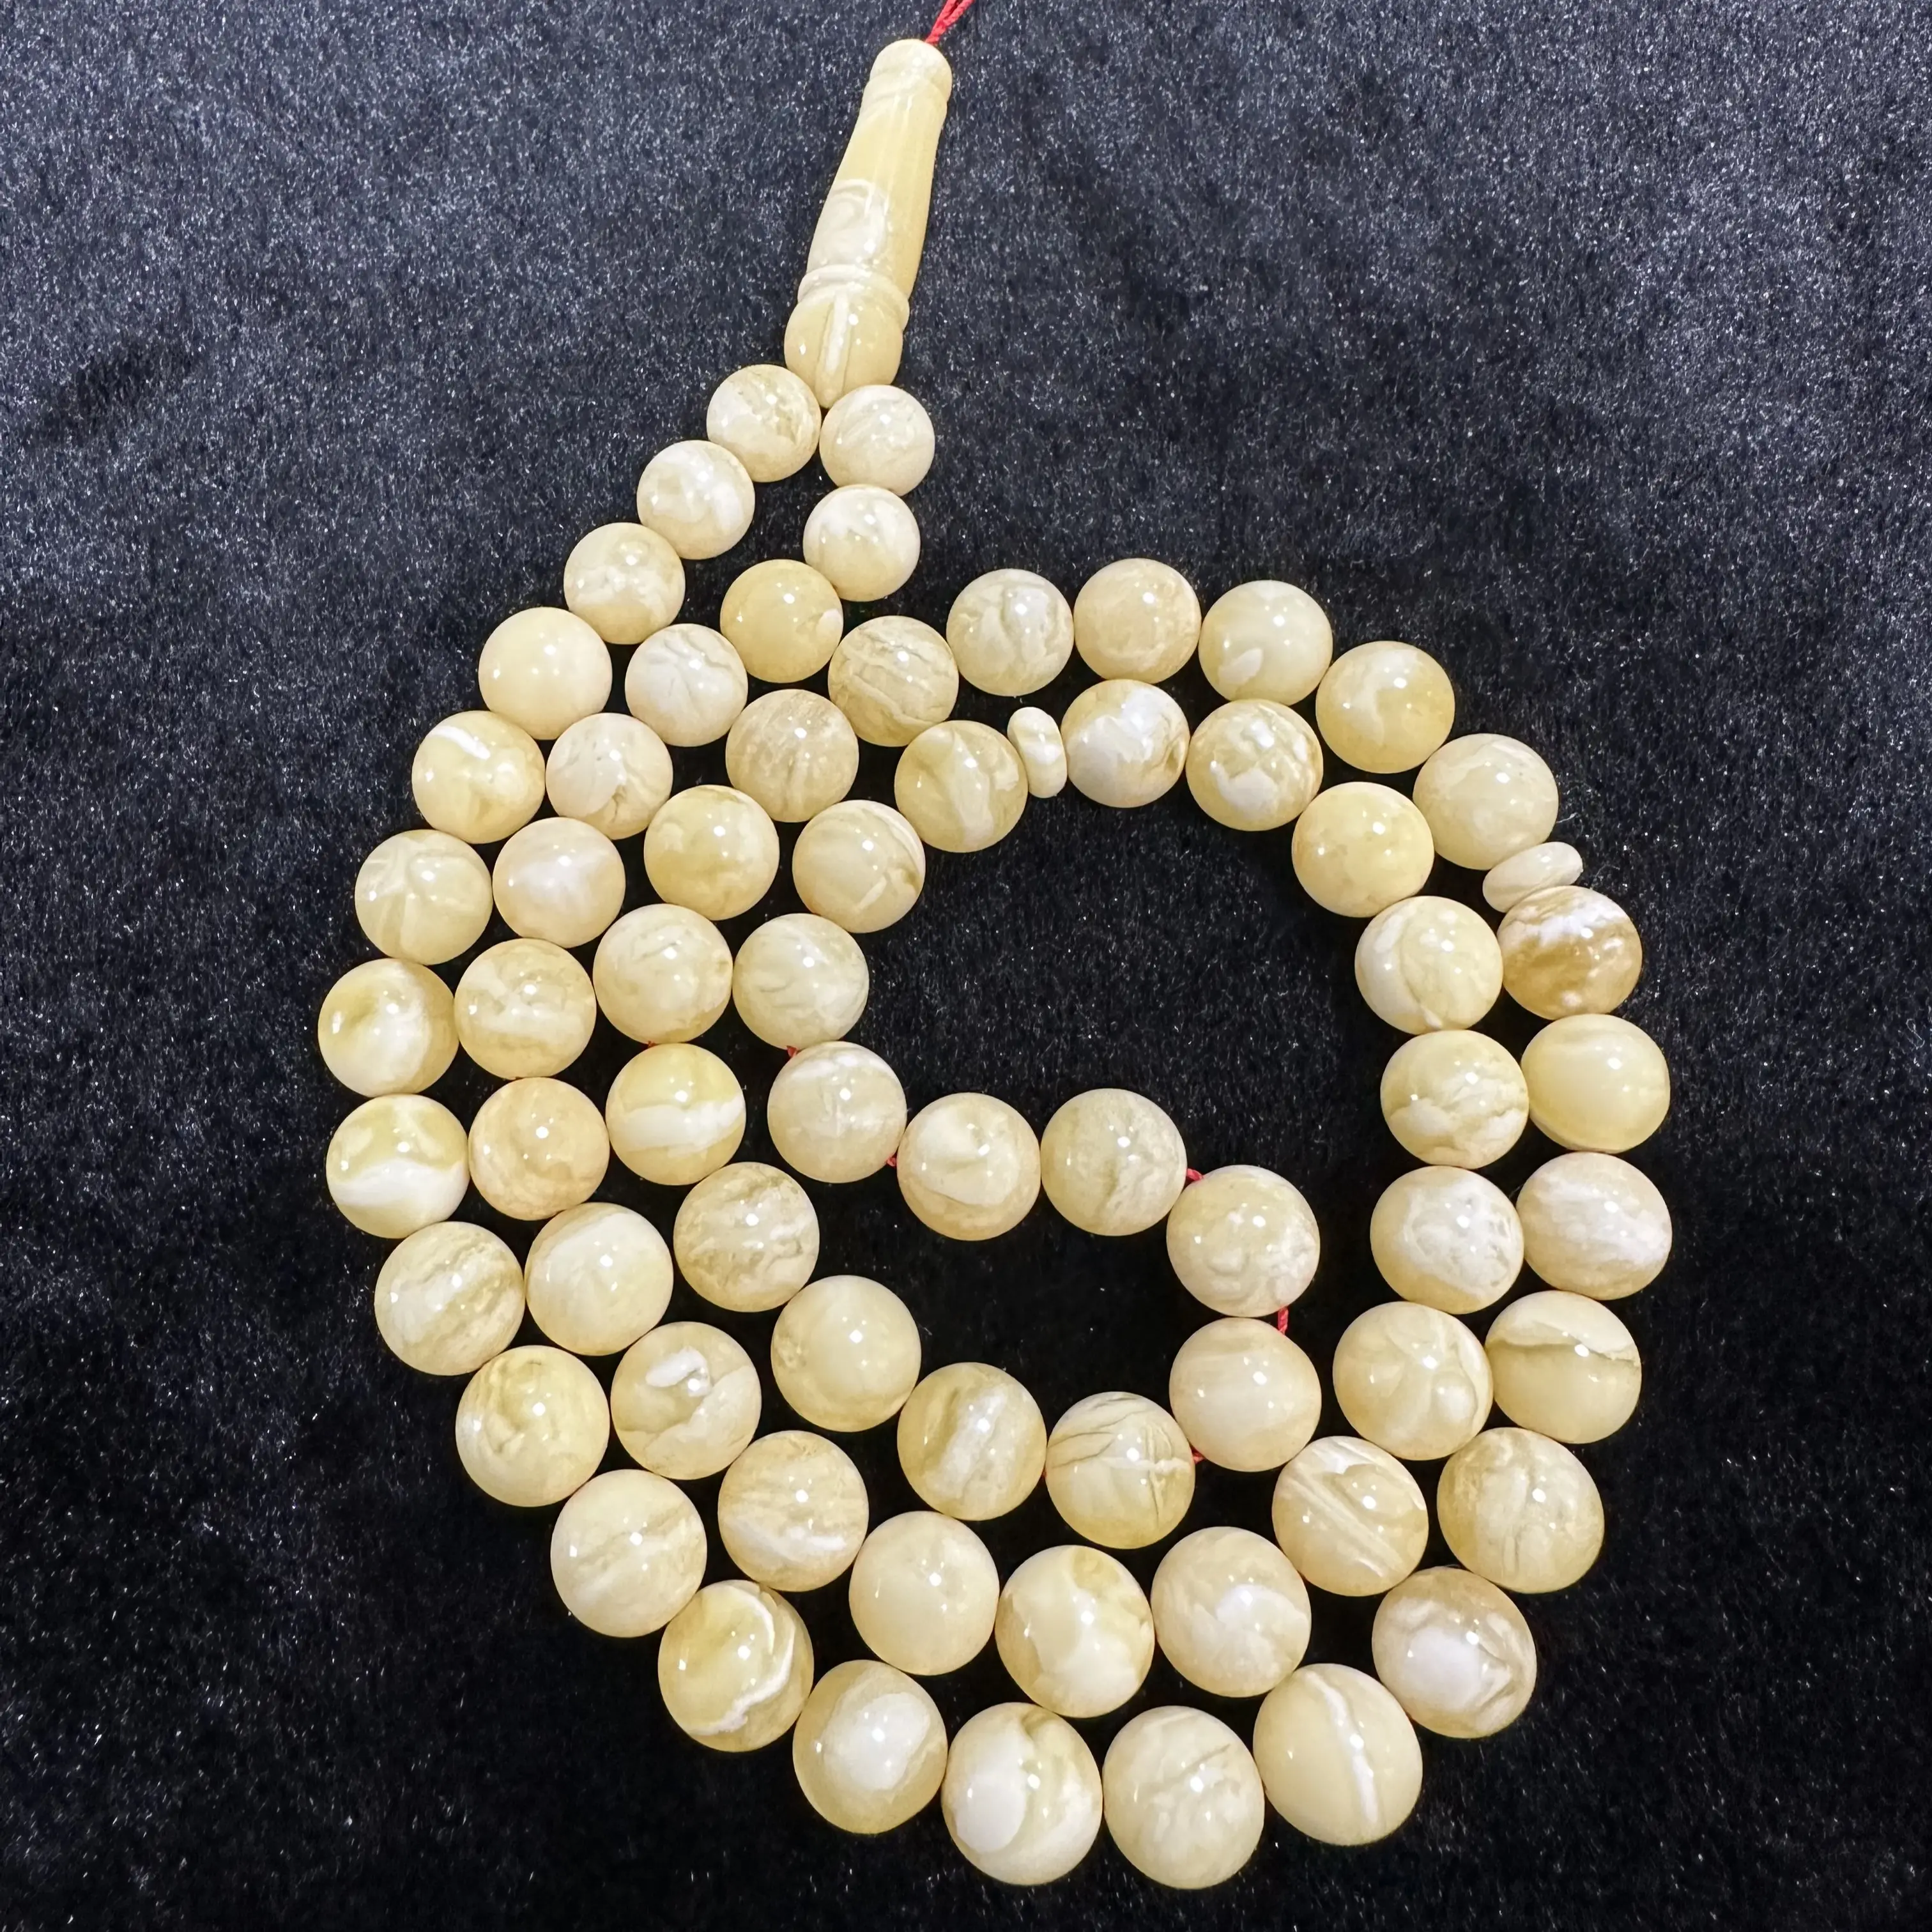 Ambra baltica naturale. Ambra bianca gialla di alta qualità. Classico rosario islamico musulmano. Belle perle di forma rotonda.